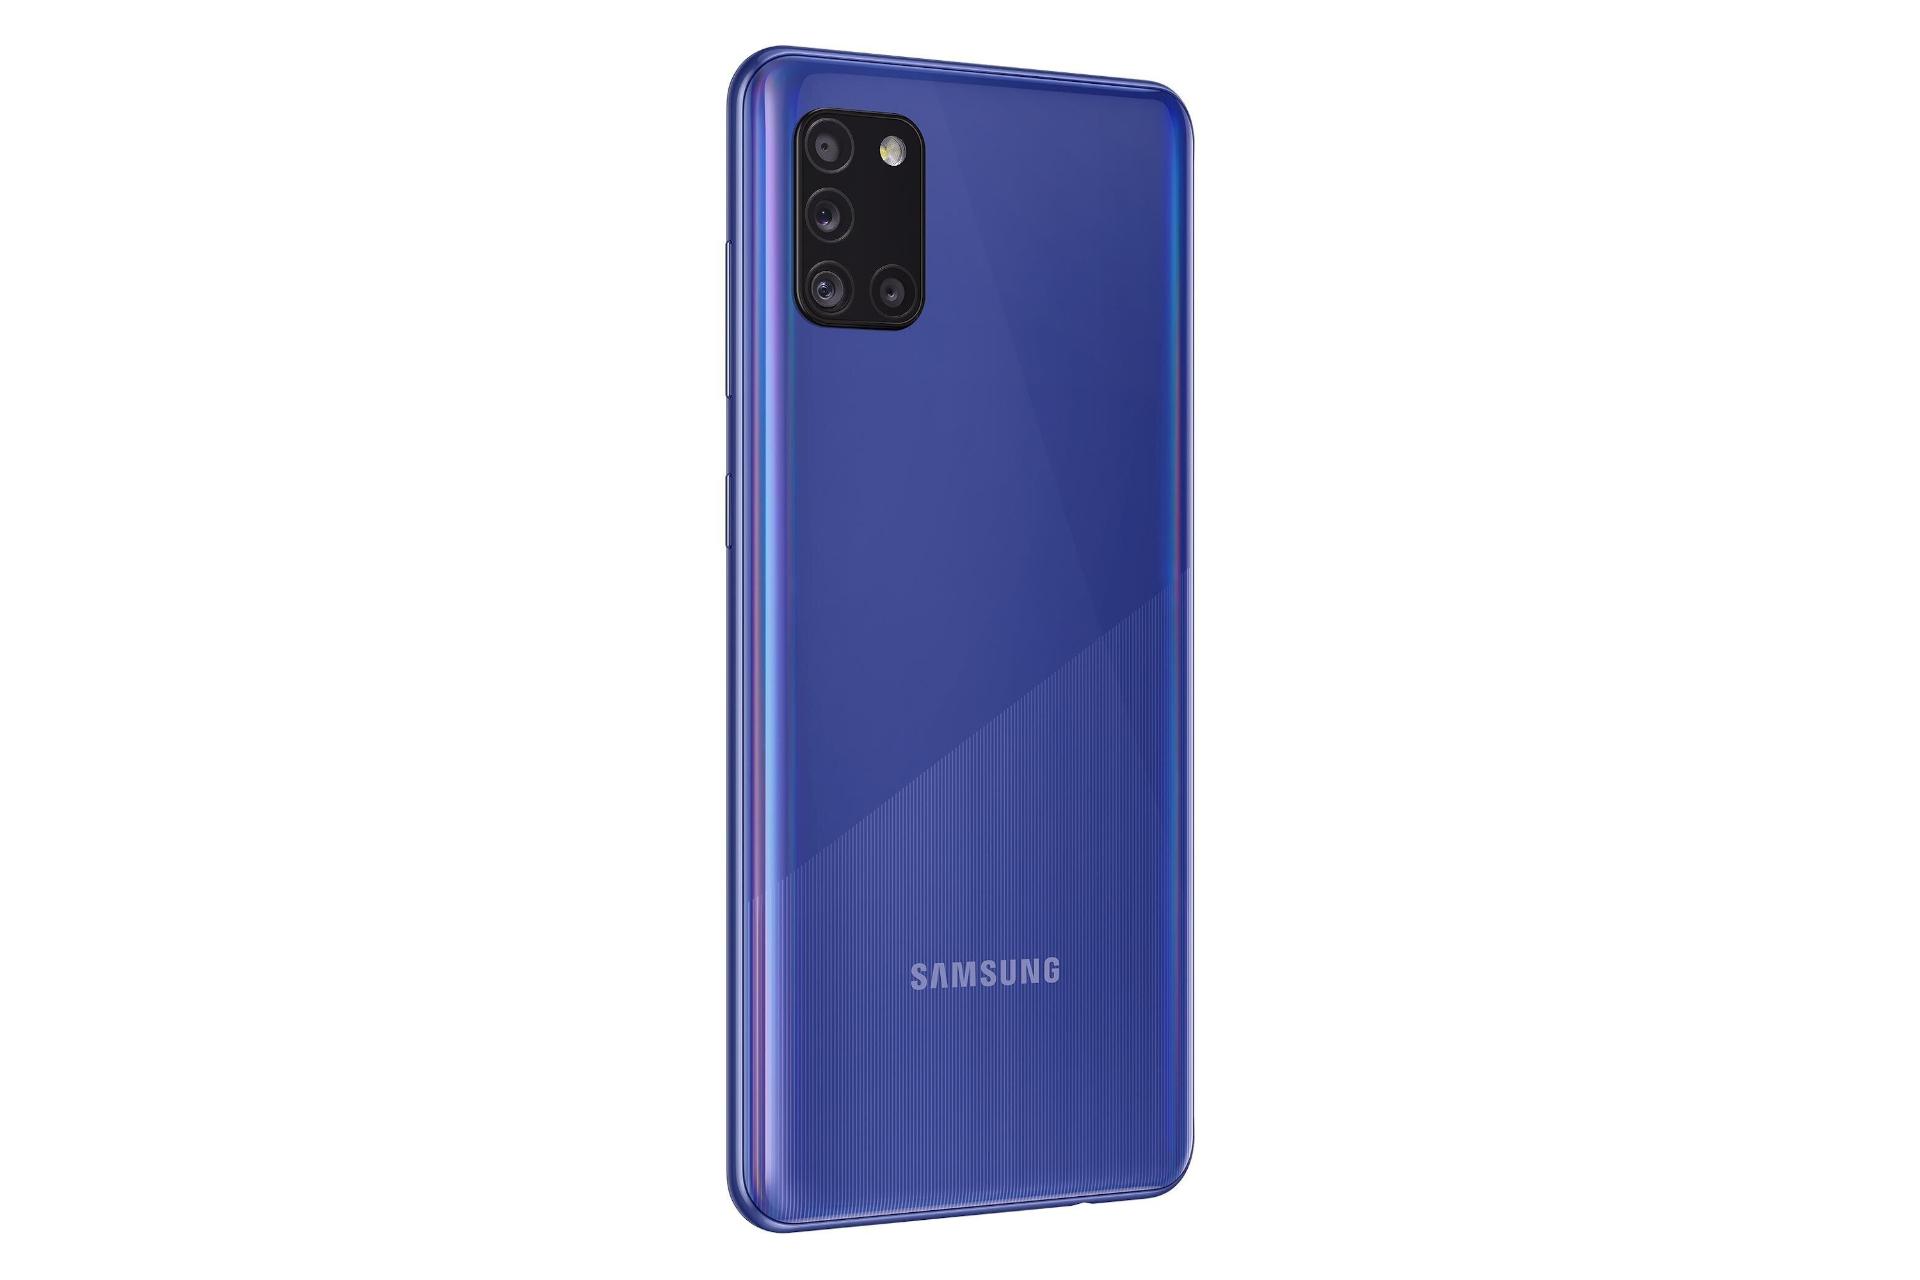 نمای چپ گوشی موبایل گلکسی A31 سامسونگ Samsung Galaxy A31 آبی